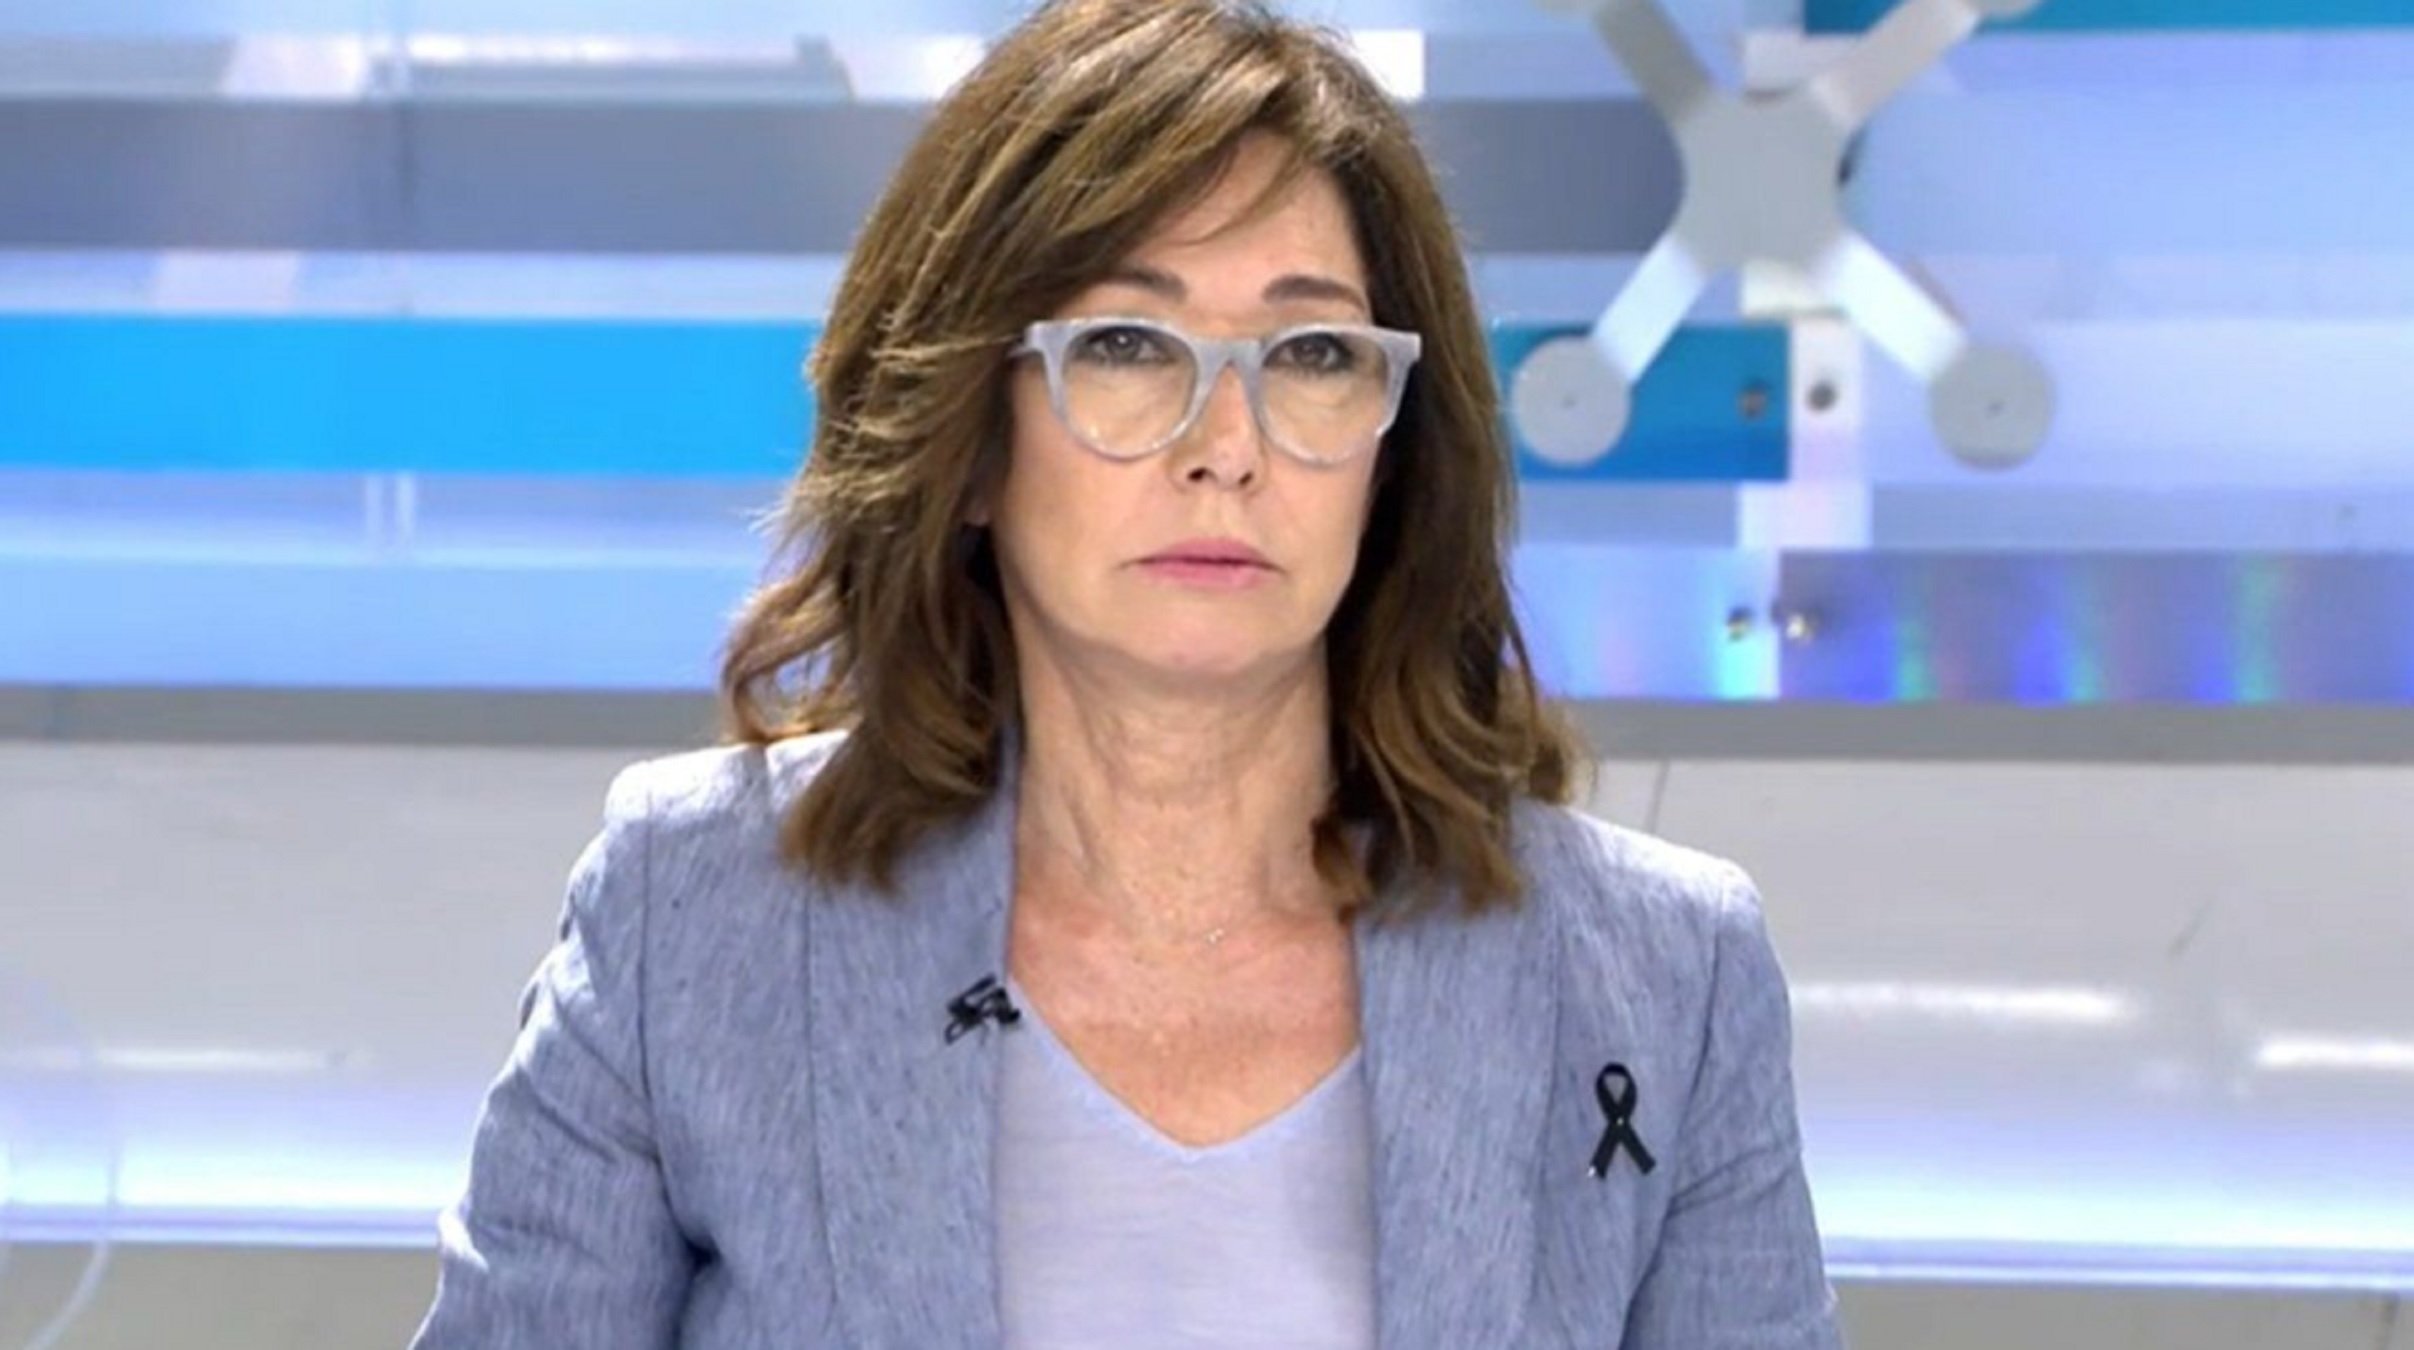 La resposta (amb insult) d'Ana Rosa a un presentador català en dir-li "anciana" en directe